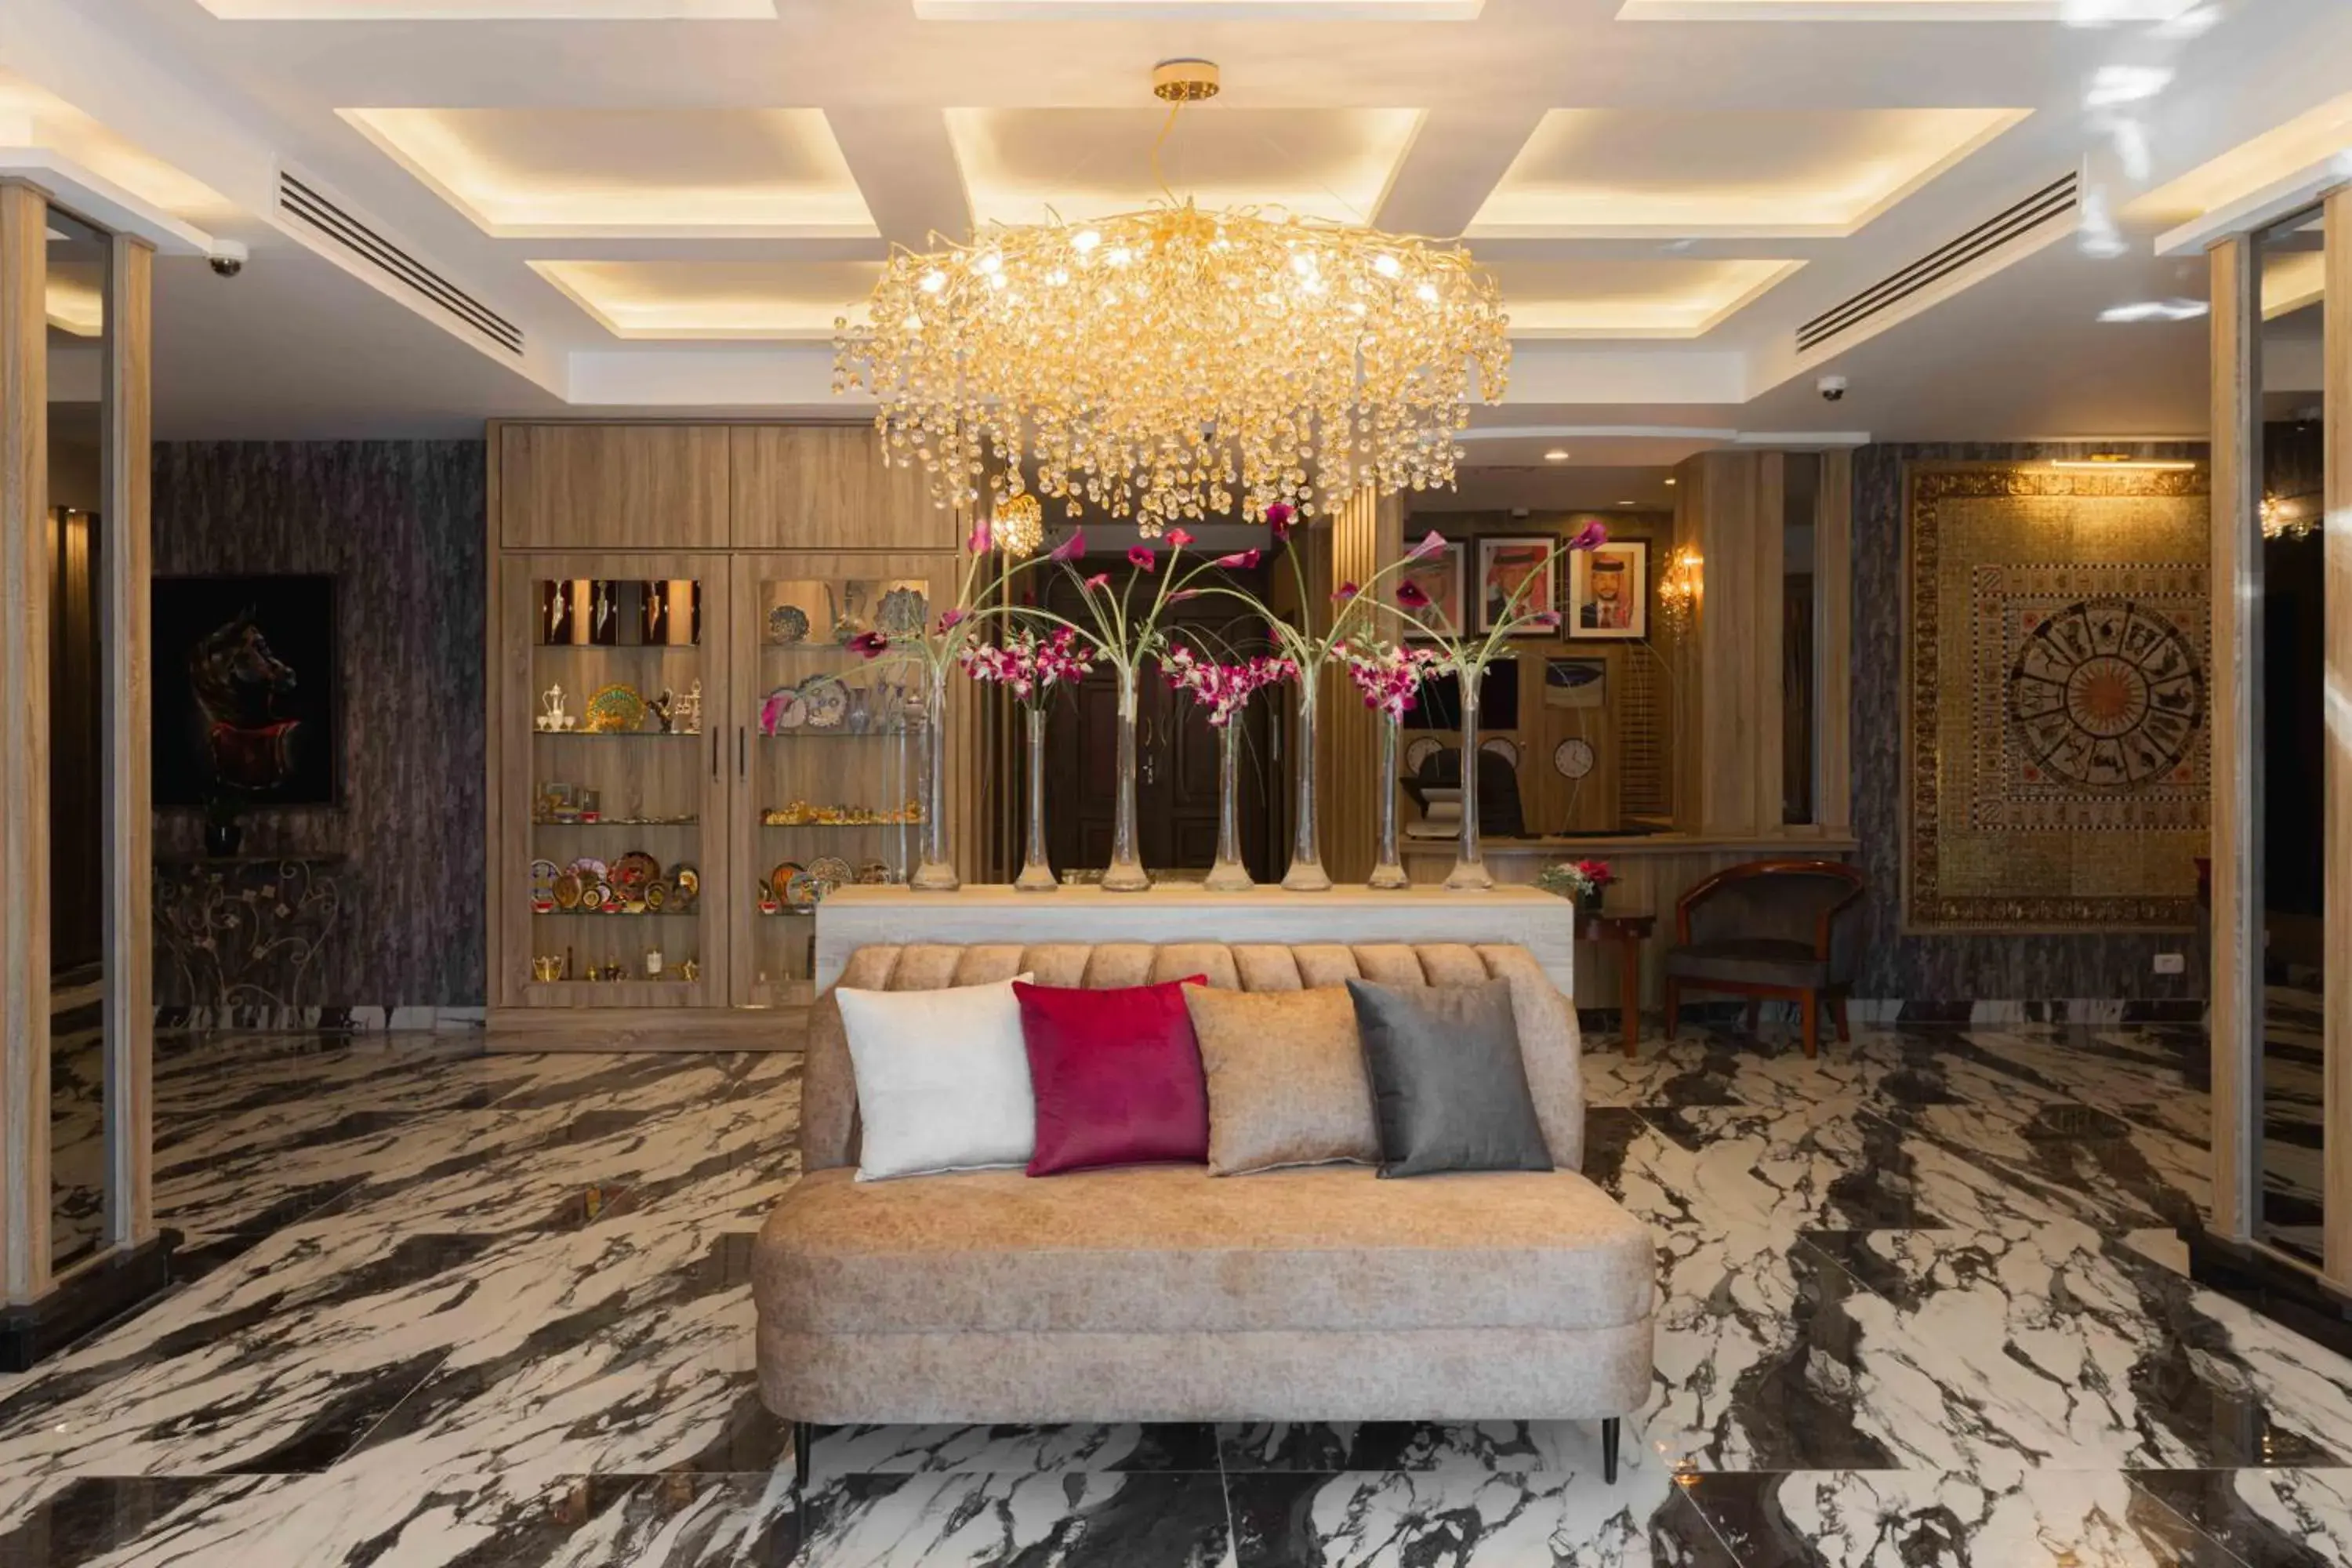 Lobby or reception in Amman Inn Boutique Hotel